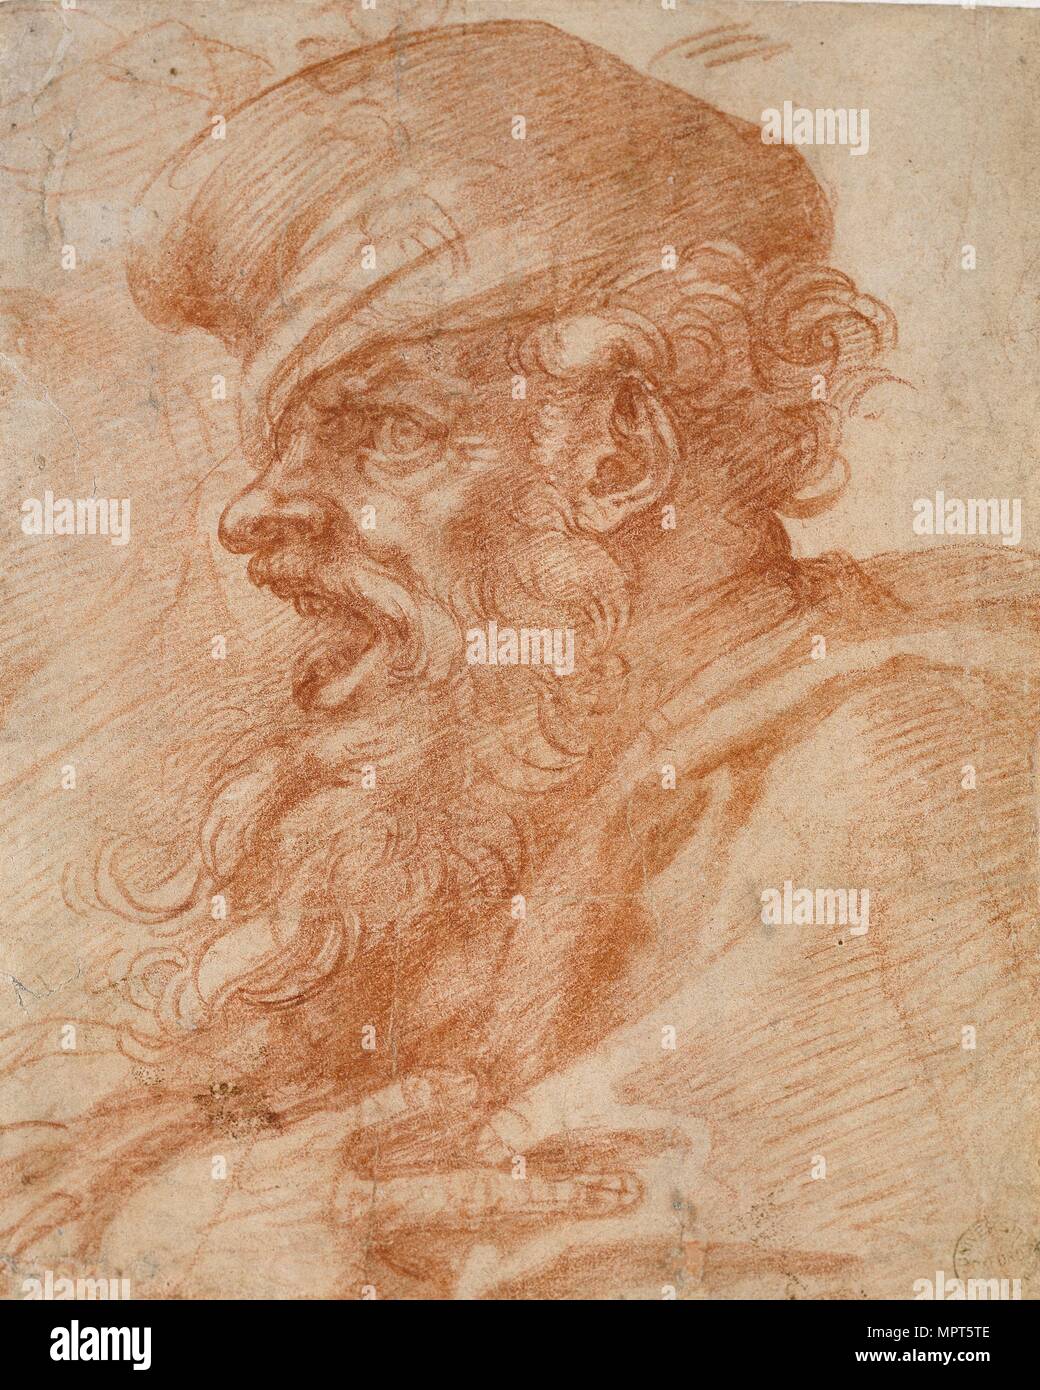 Kopf eines bärtigen Mannes schreiend, aus dem 16. Jahrhundert. Künstler: Michelangelo Buonarroti. Stockfoto